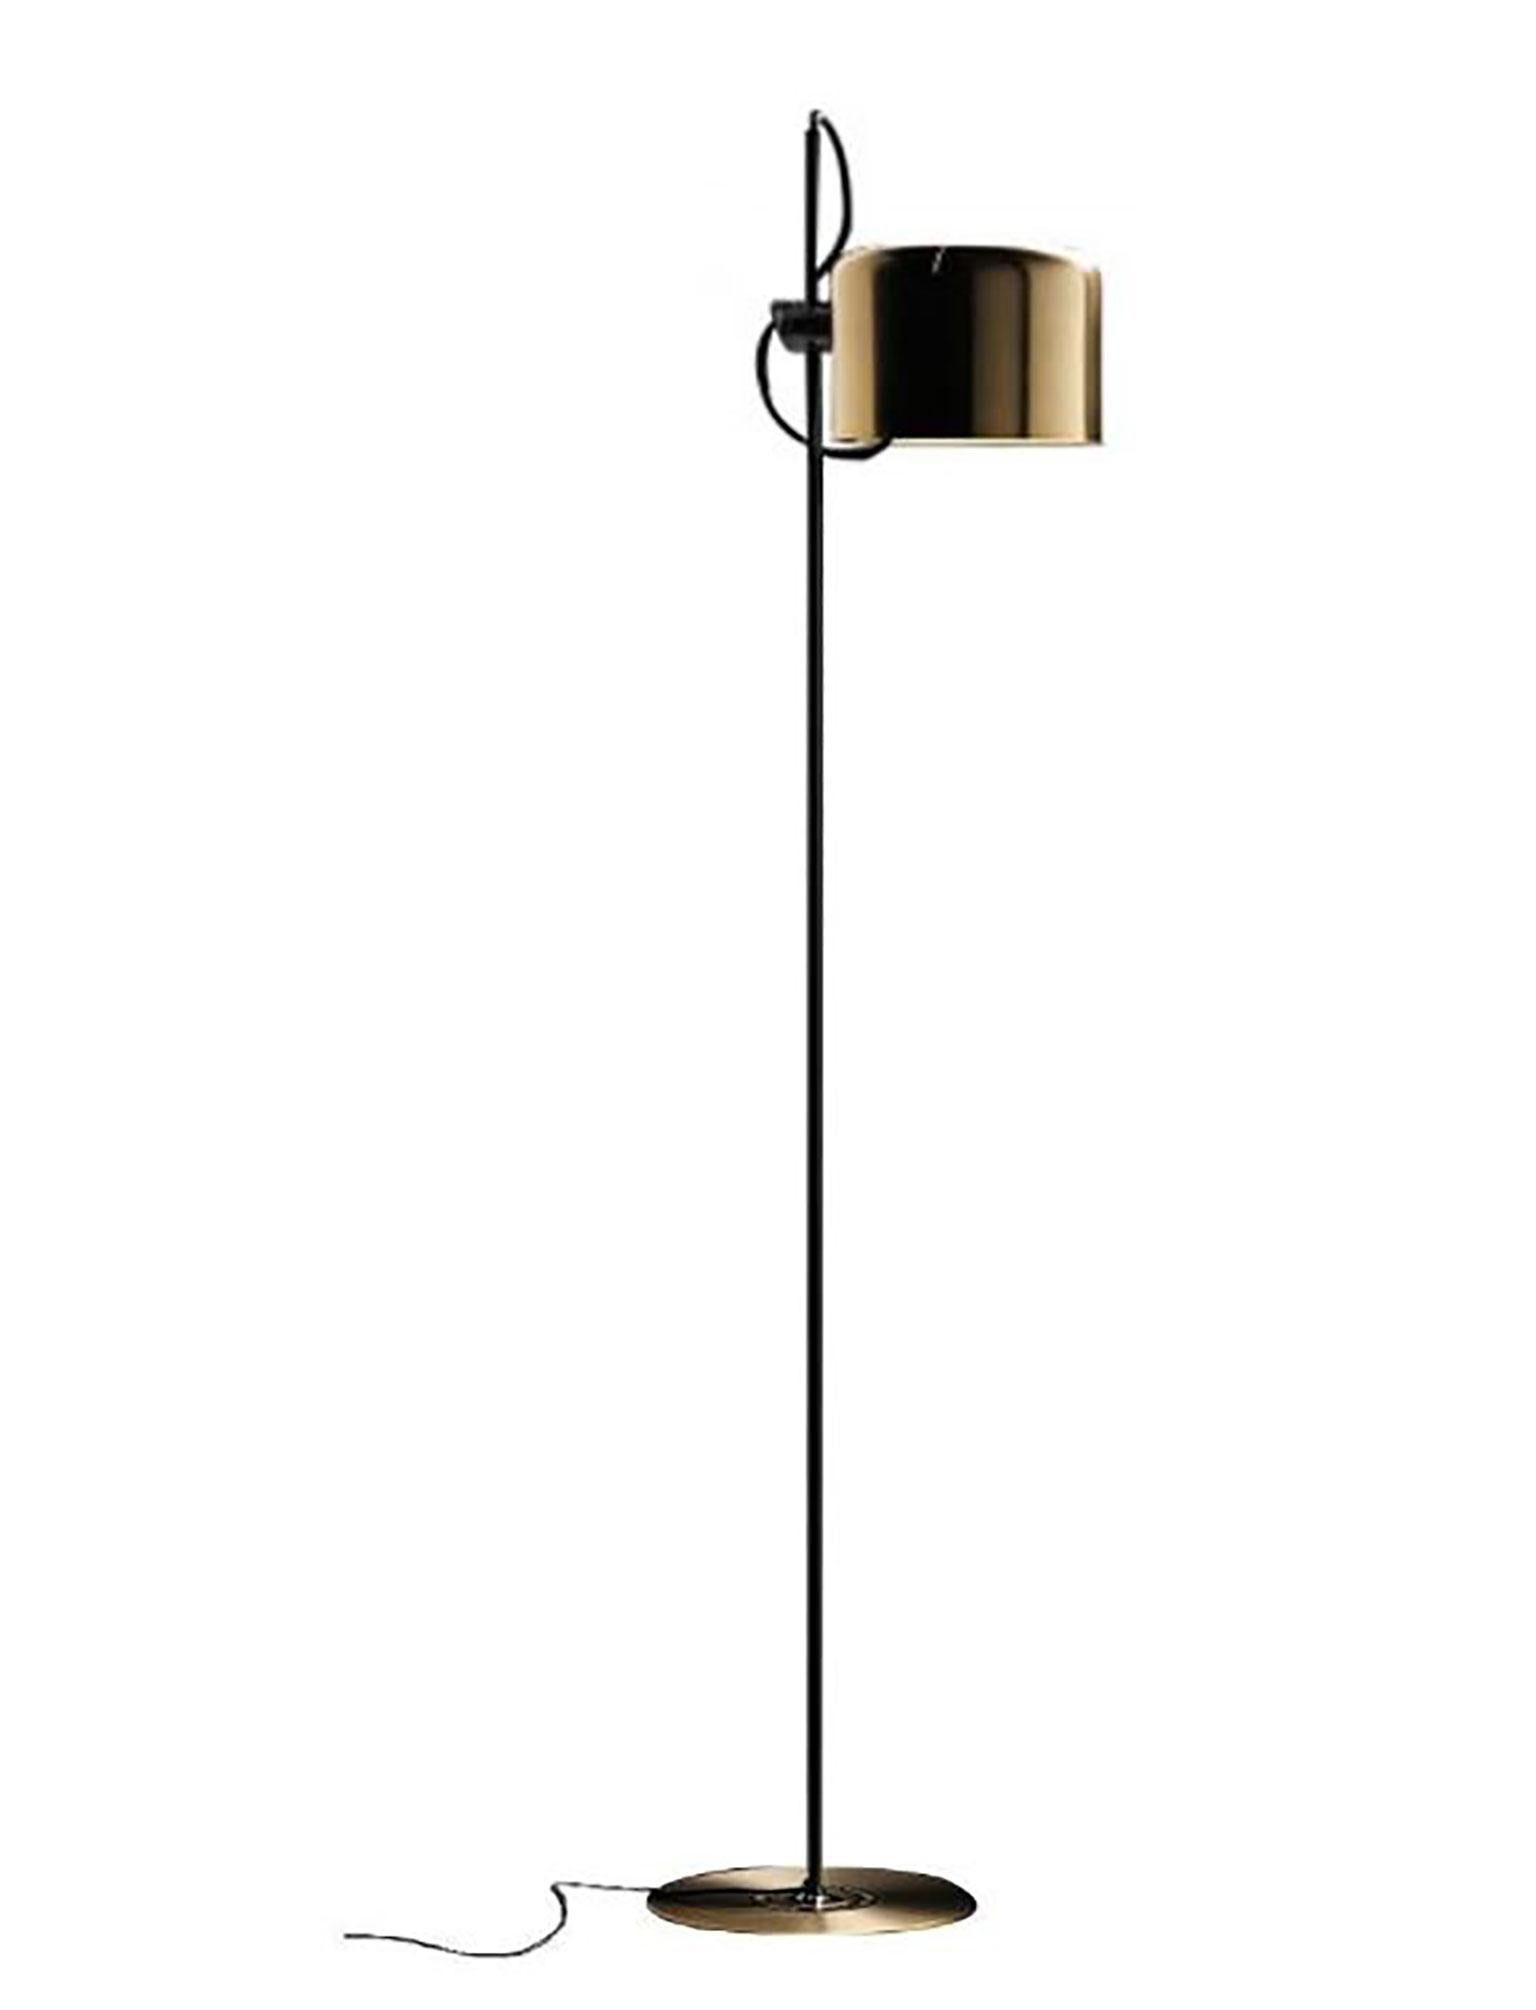 Lampadaire Coupe (3321) conçu par Joe Colombo pour Oluce. La série de lampes Coupe est considérée comme une variante des lampes araignées. Cette lampe a une base en métal laqué avec un réflecteur en forme de demi-cylindre en métal émaillé au four.